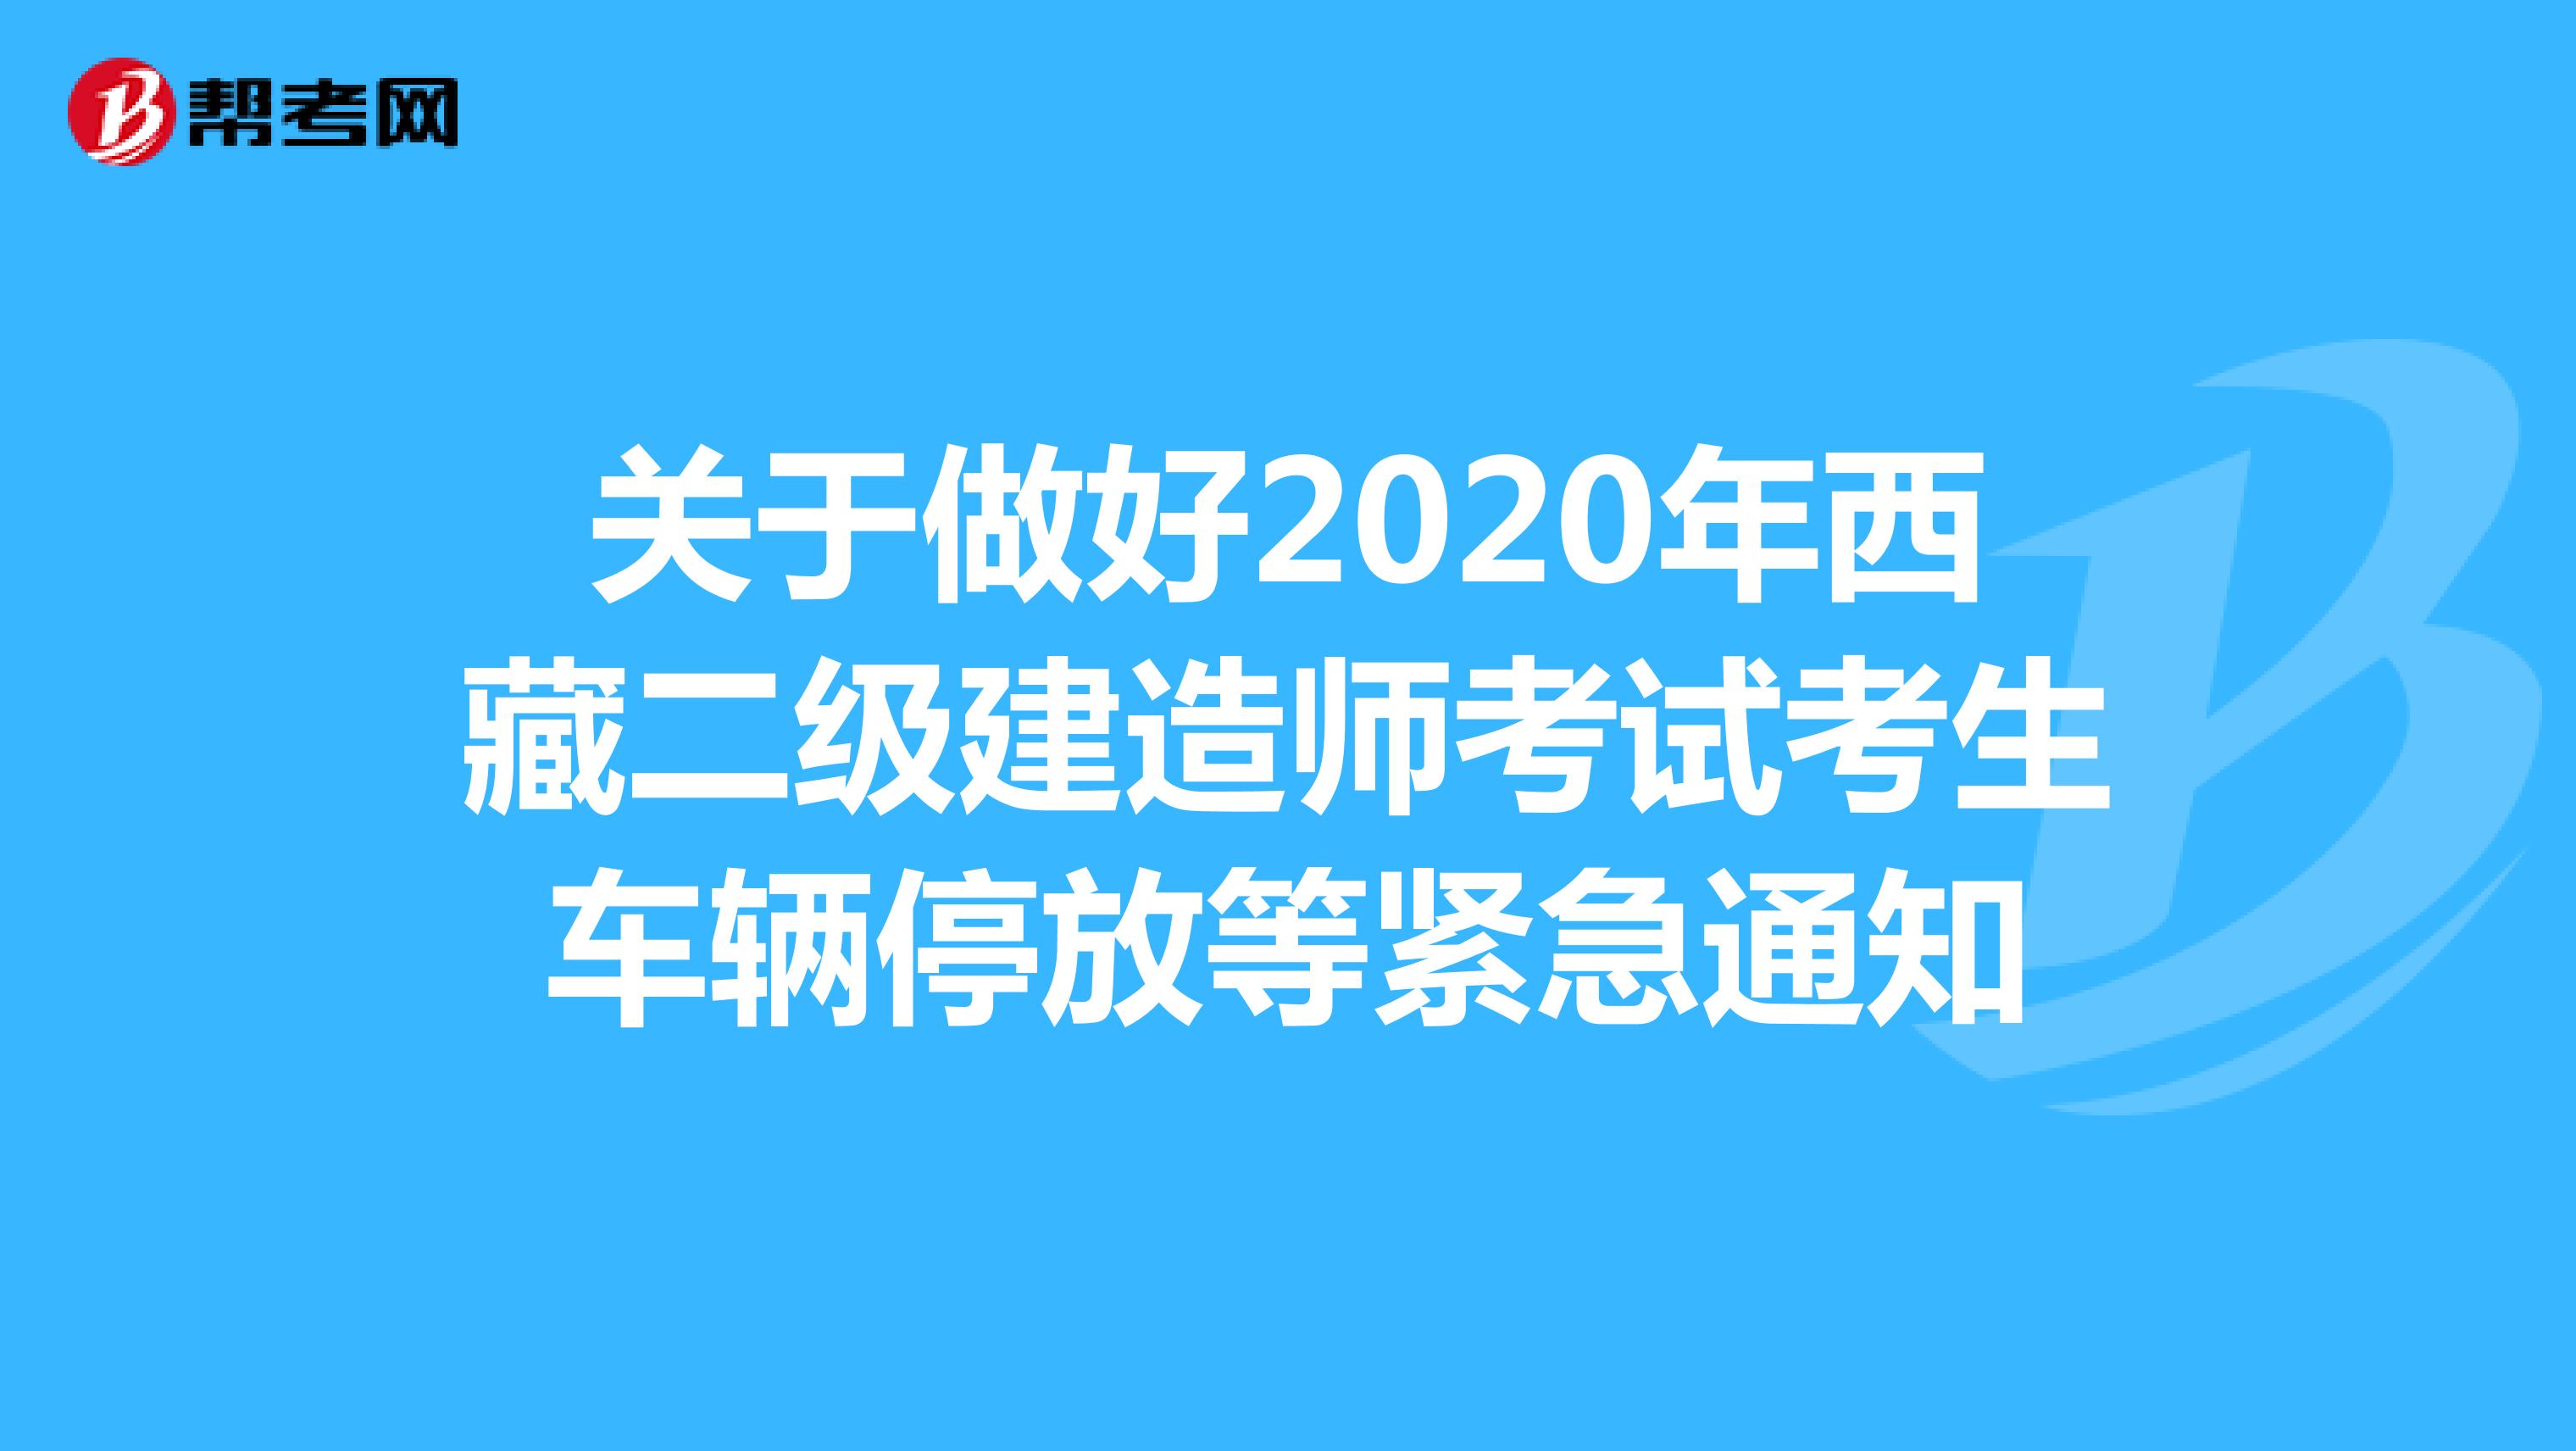 关于做好2020年西藏二级建造师考试考生车辆停放等紧急通知